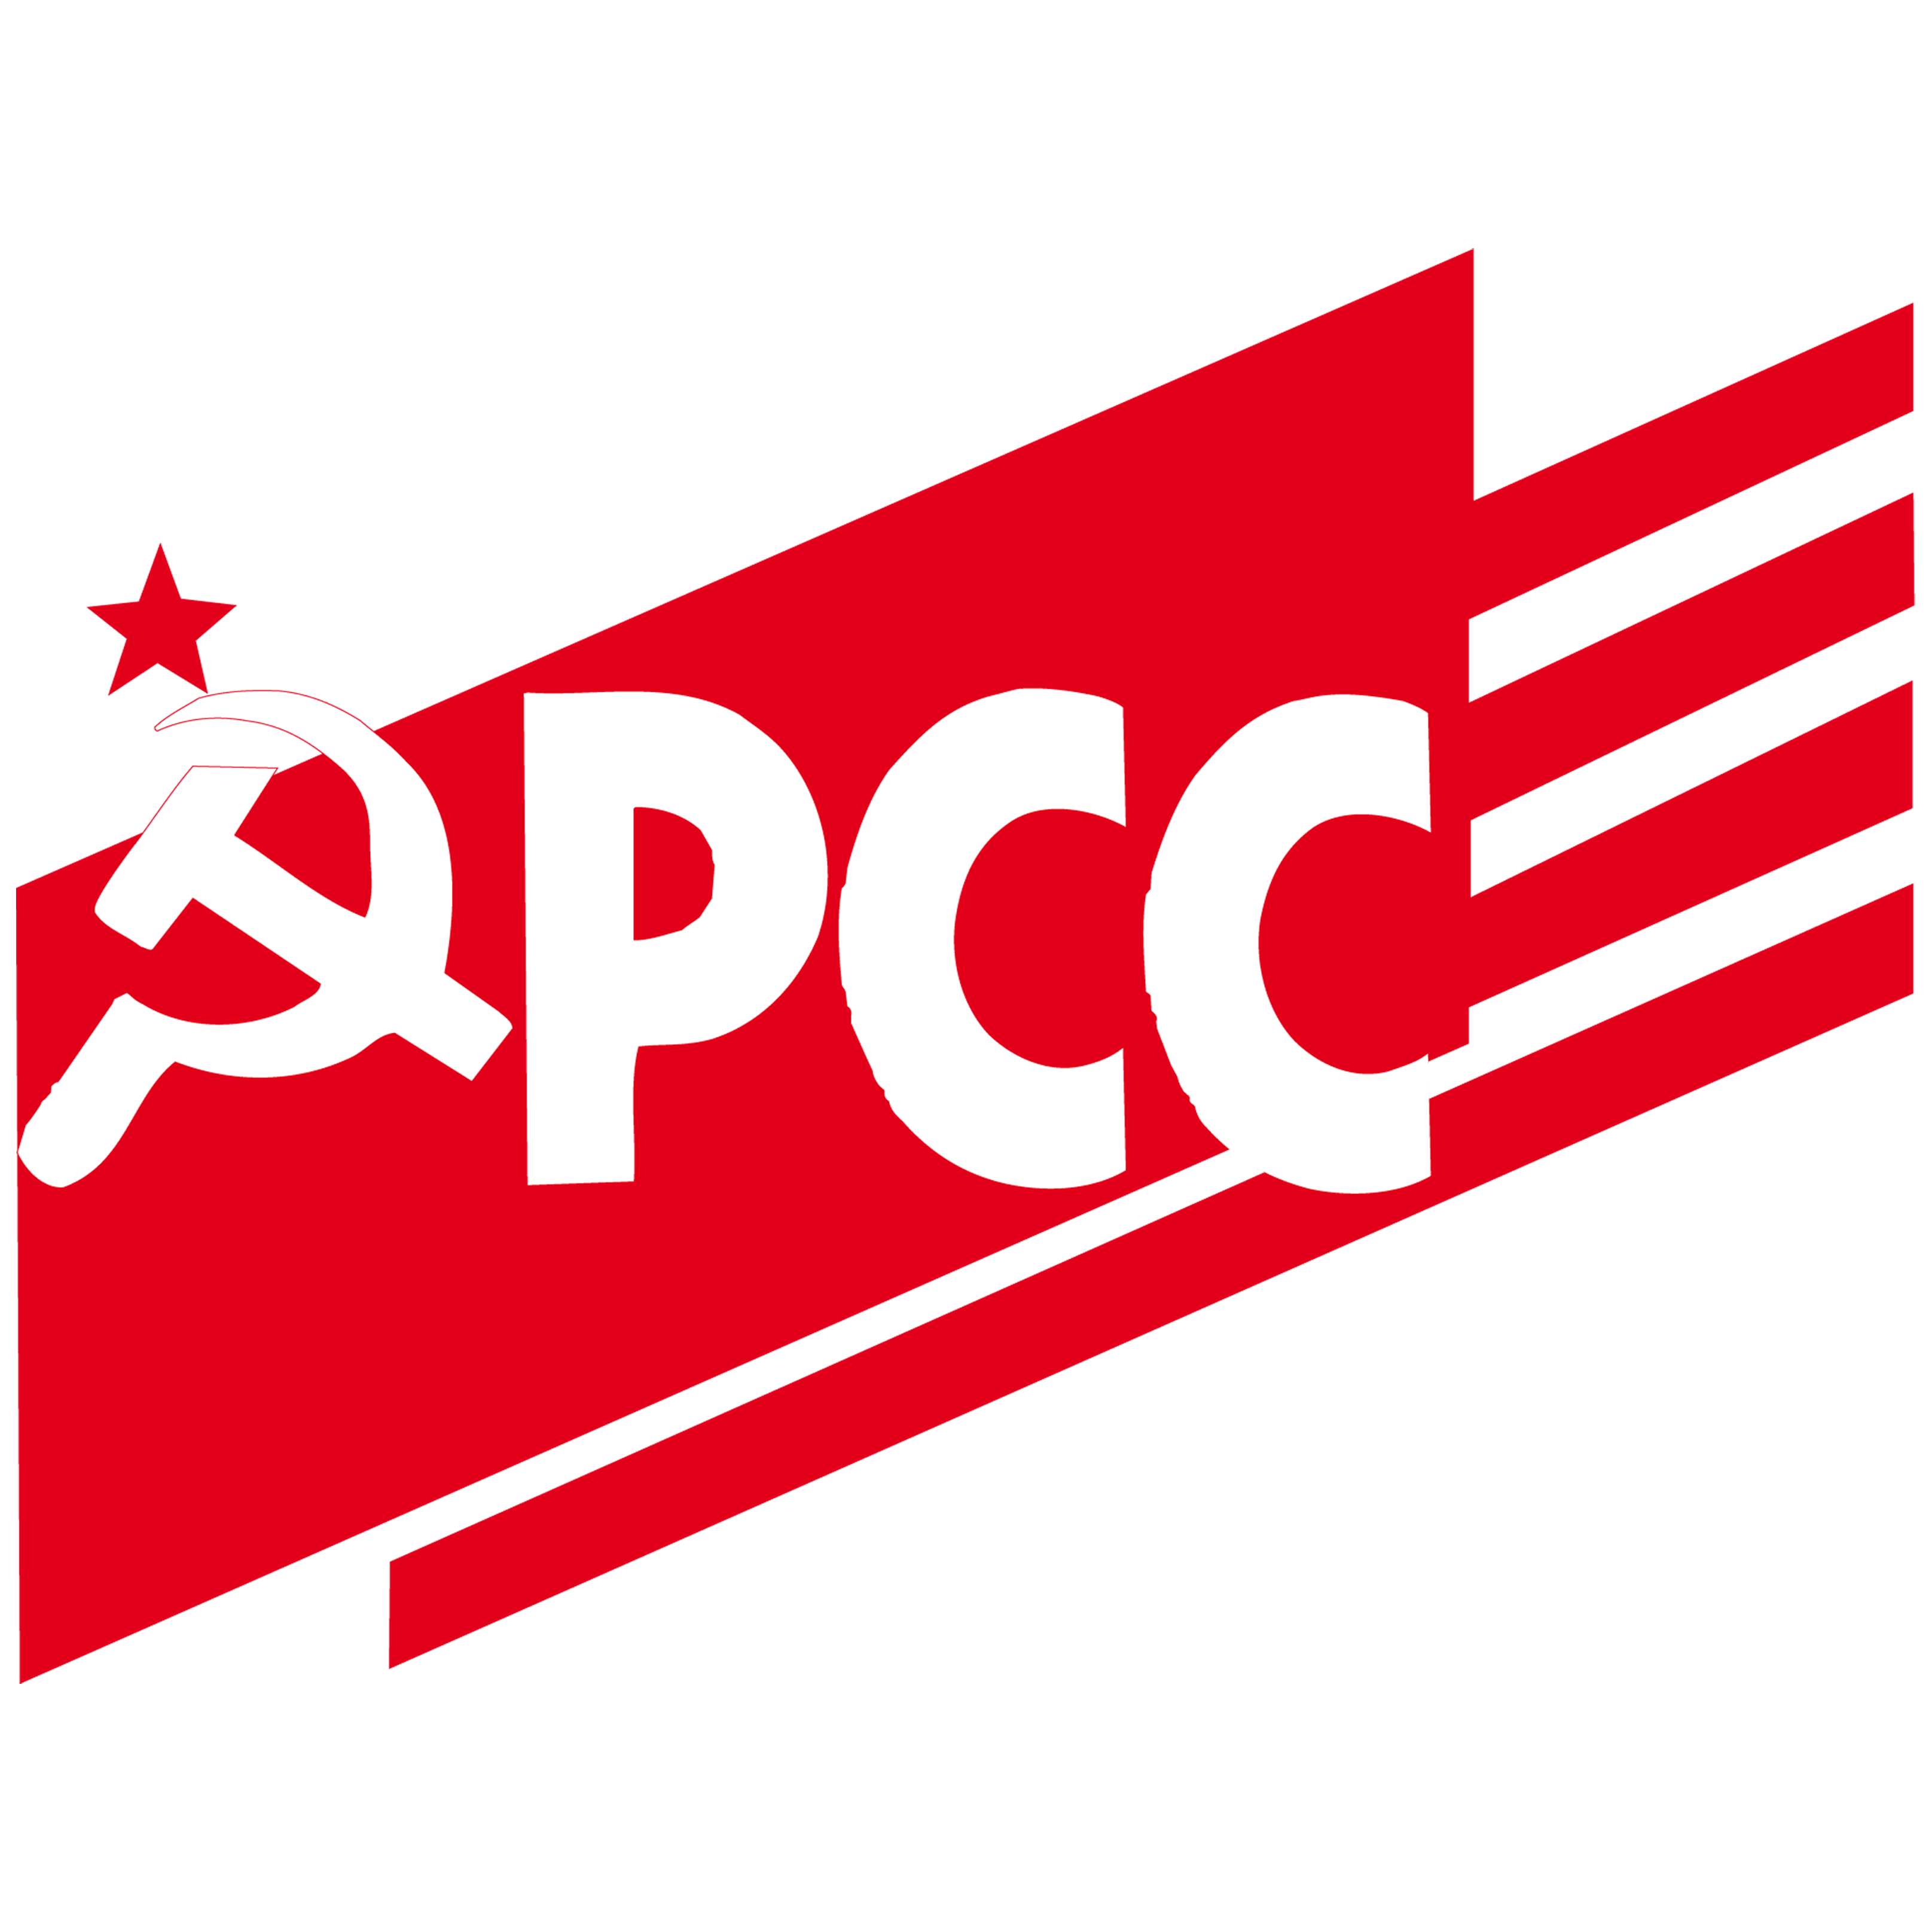 PCC Logo - Logo del PCC.png